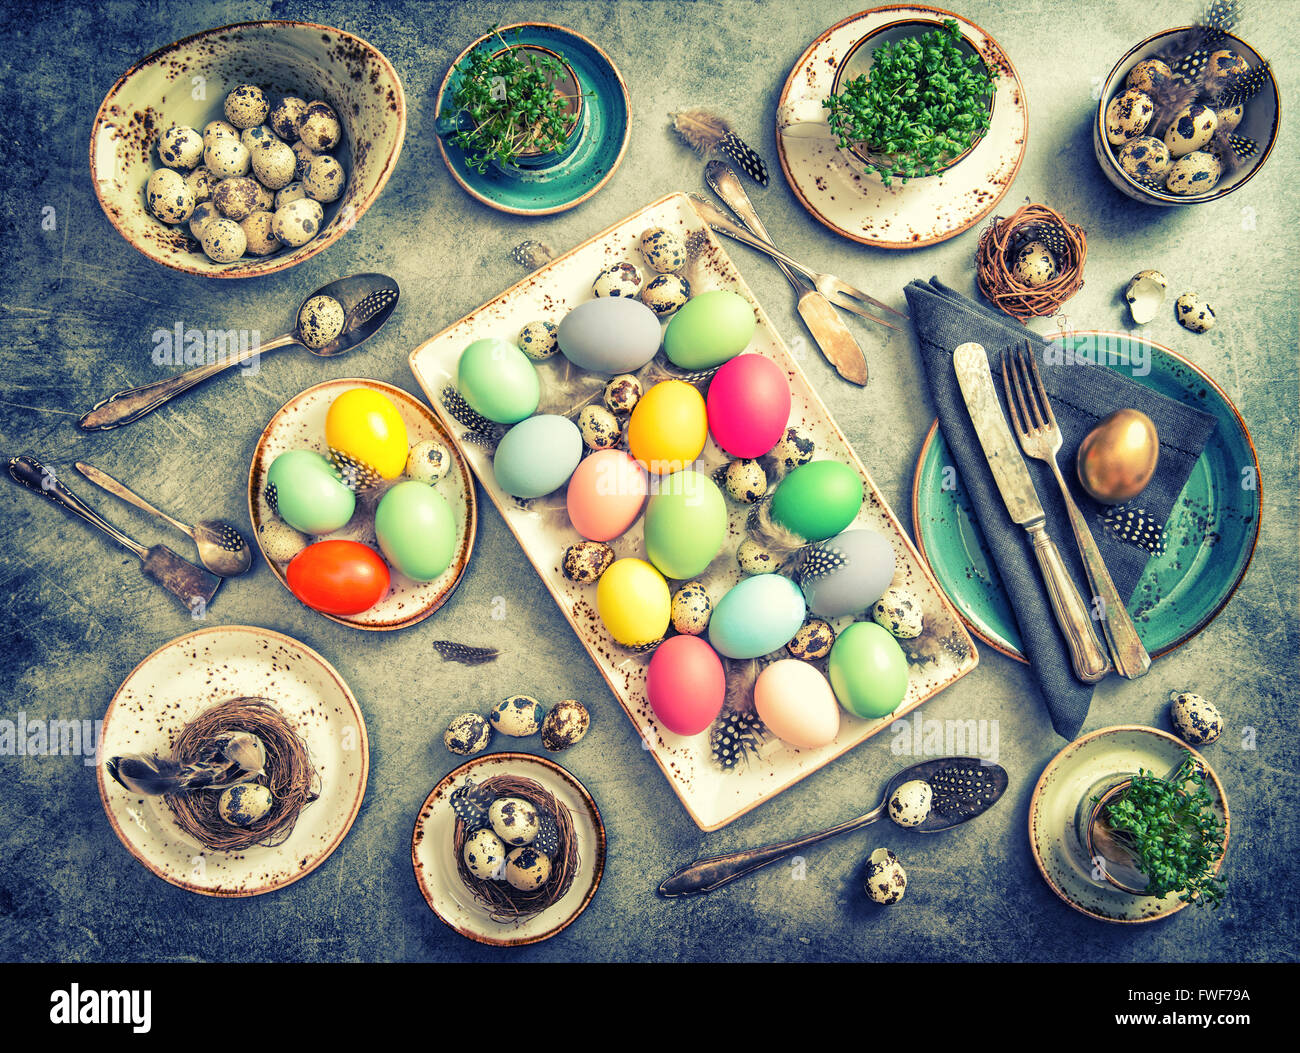 Decorazione di pasqua. Festosa messa in tavola con uova colorate. In stile vintage tonica foto Foto Stock